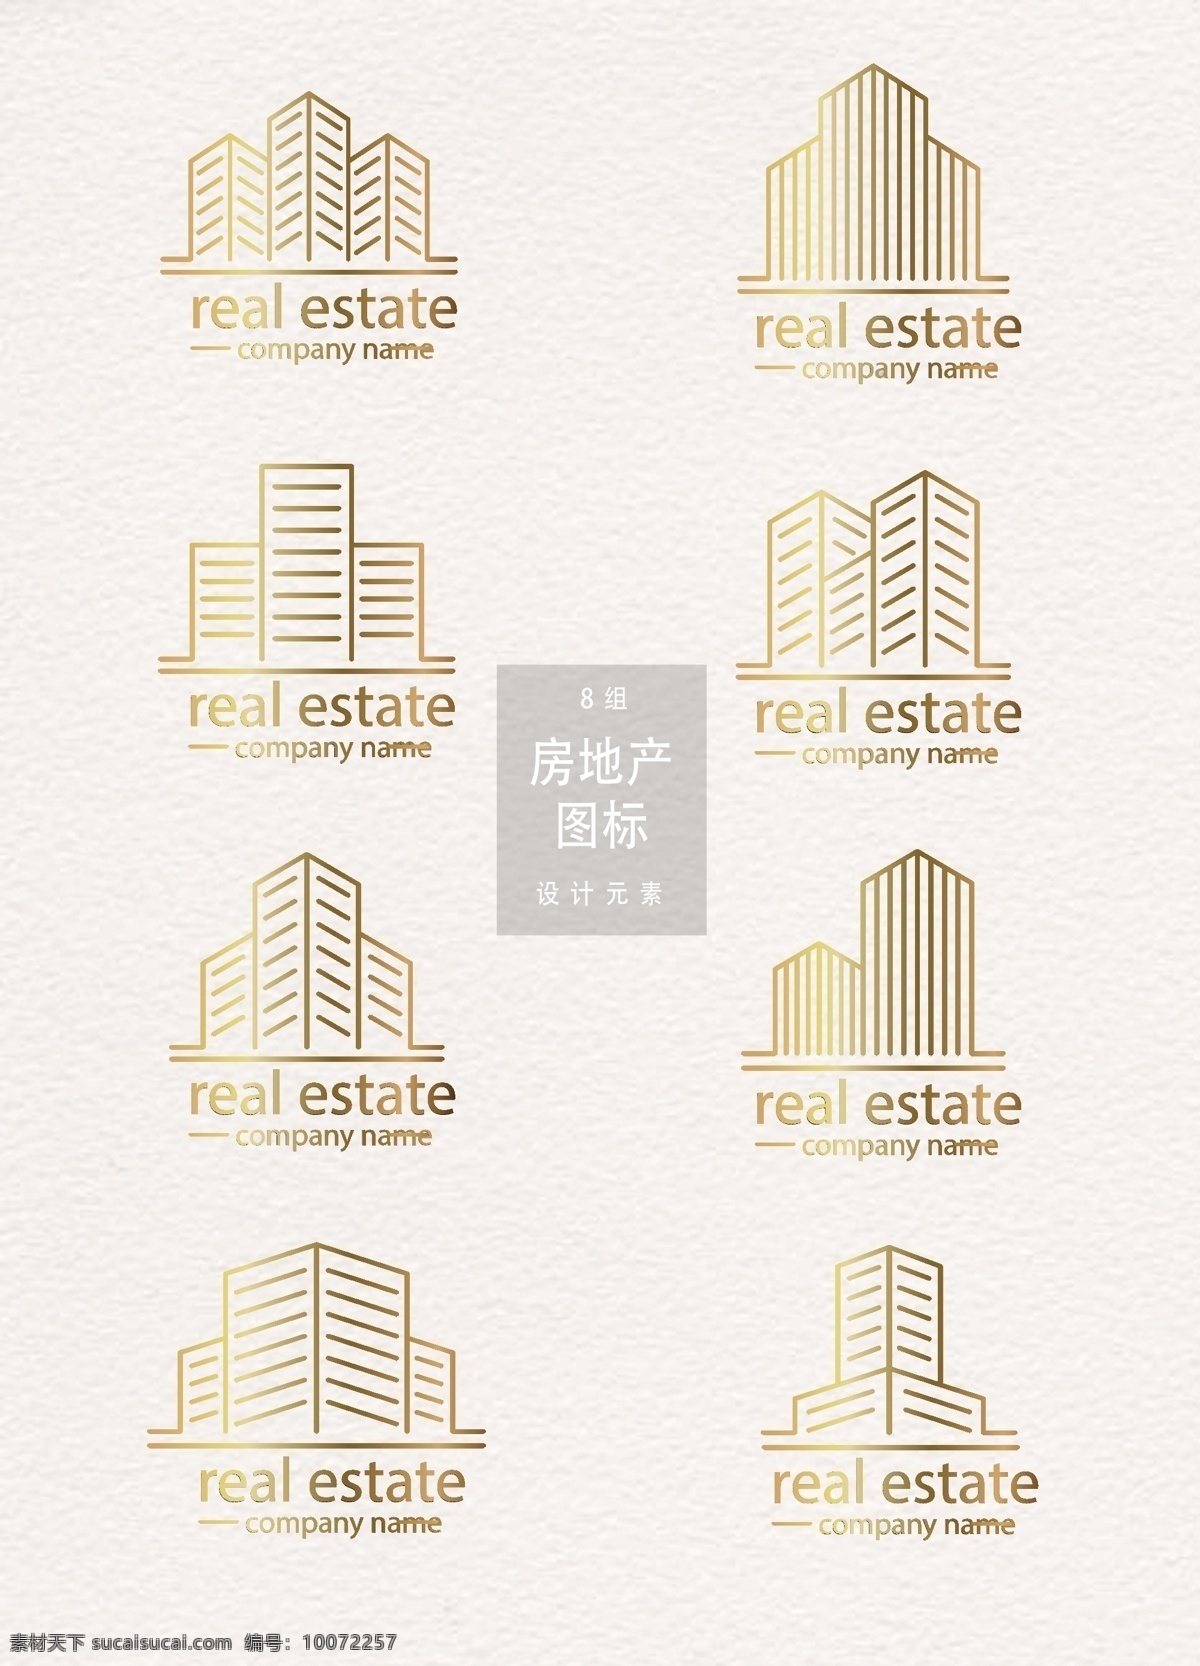 创意 房地产 图标 元素 地产 矢量素材 金色 房地产图标 图标设计 金色图标 楼房 大楼